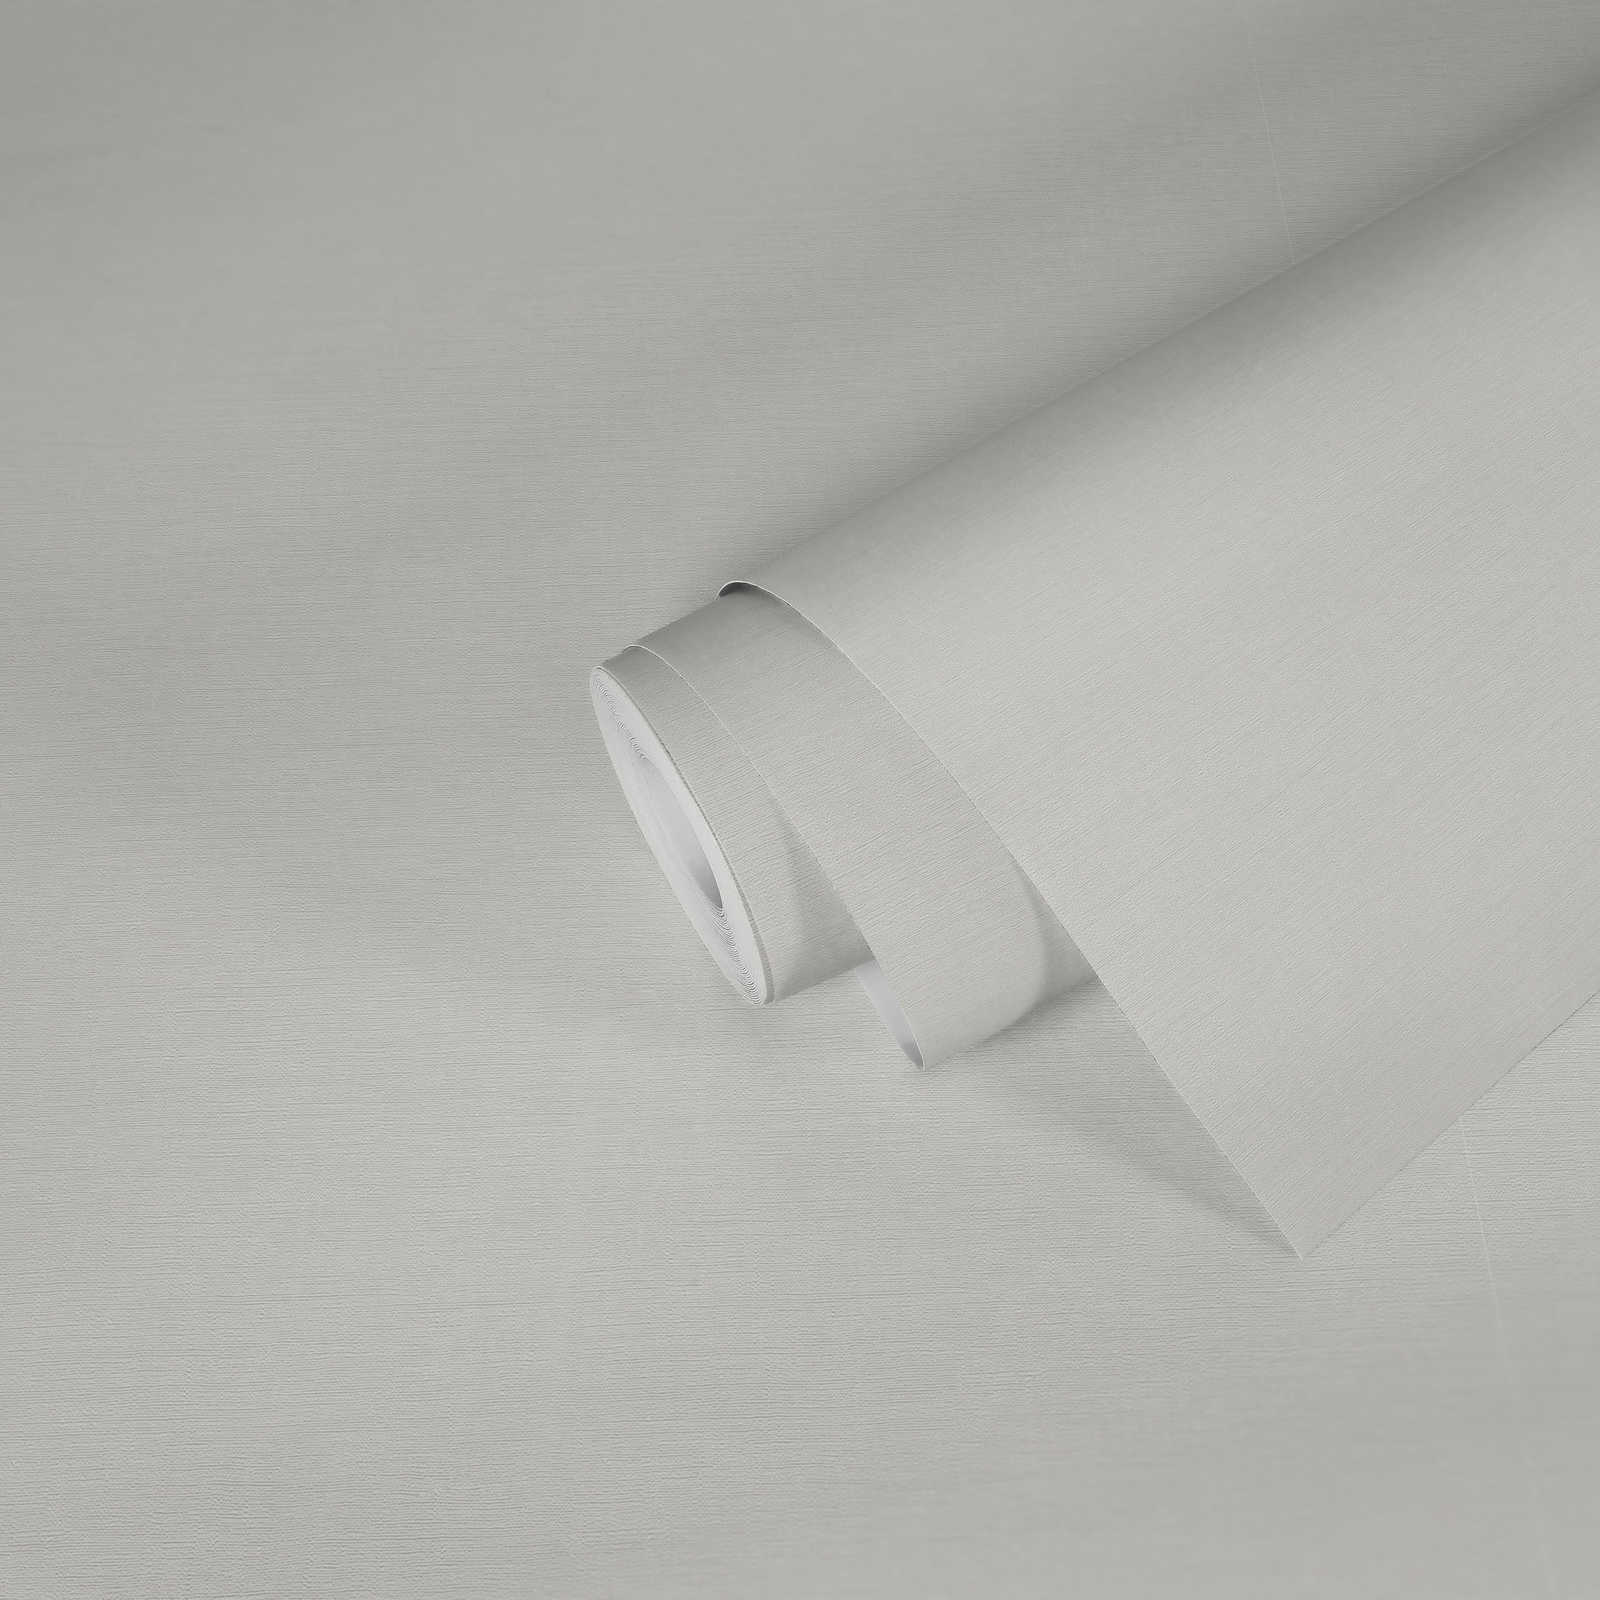             Eenheidsbehang wit mat met structuurdesign in gipslook
        